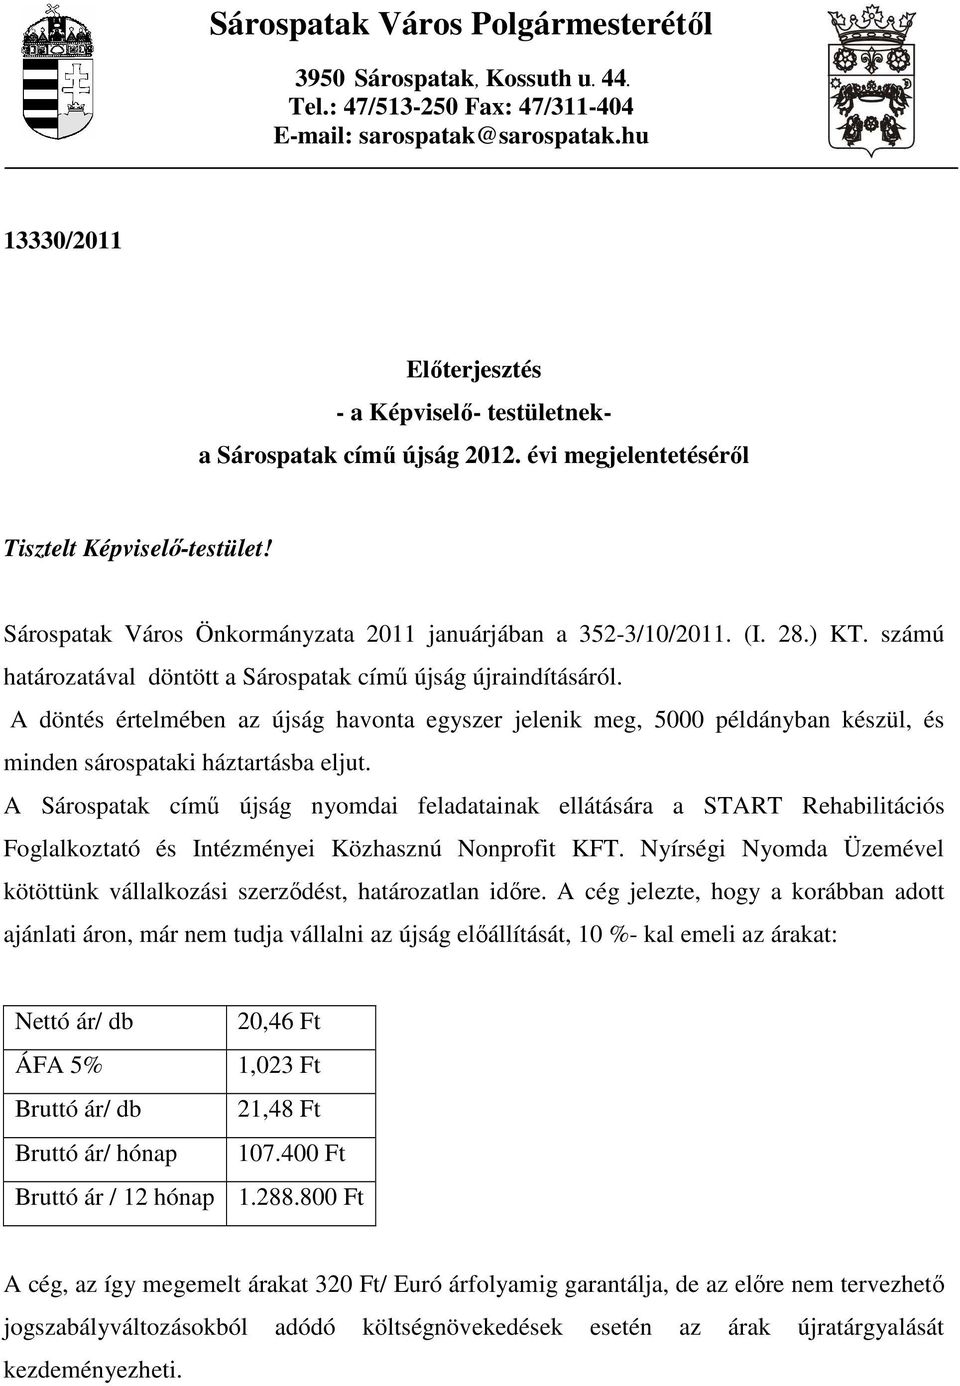 Sárospatak Város Önkormányzata 2011 januárjában a 352-3/10/2011. (I. 28.) KT. számú határozatával döntött a Sárospatak címő újság újraindításáról.